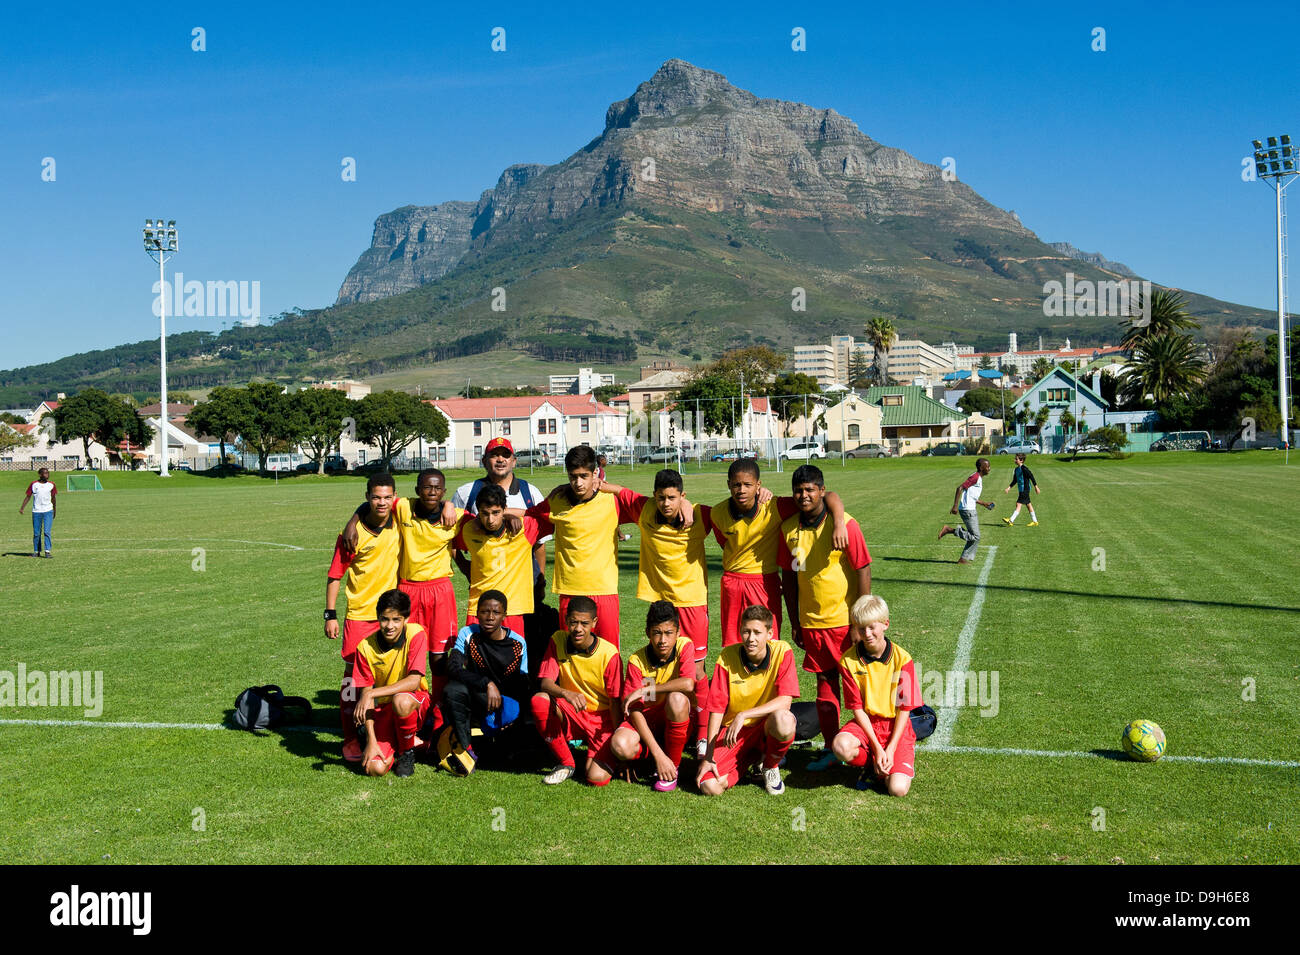 Club de Fútbol Rygersdal U15 Junior team antes de un partido, Ciudad del Cabo, Sudáfrica Foto de stock